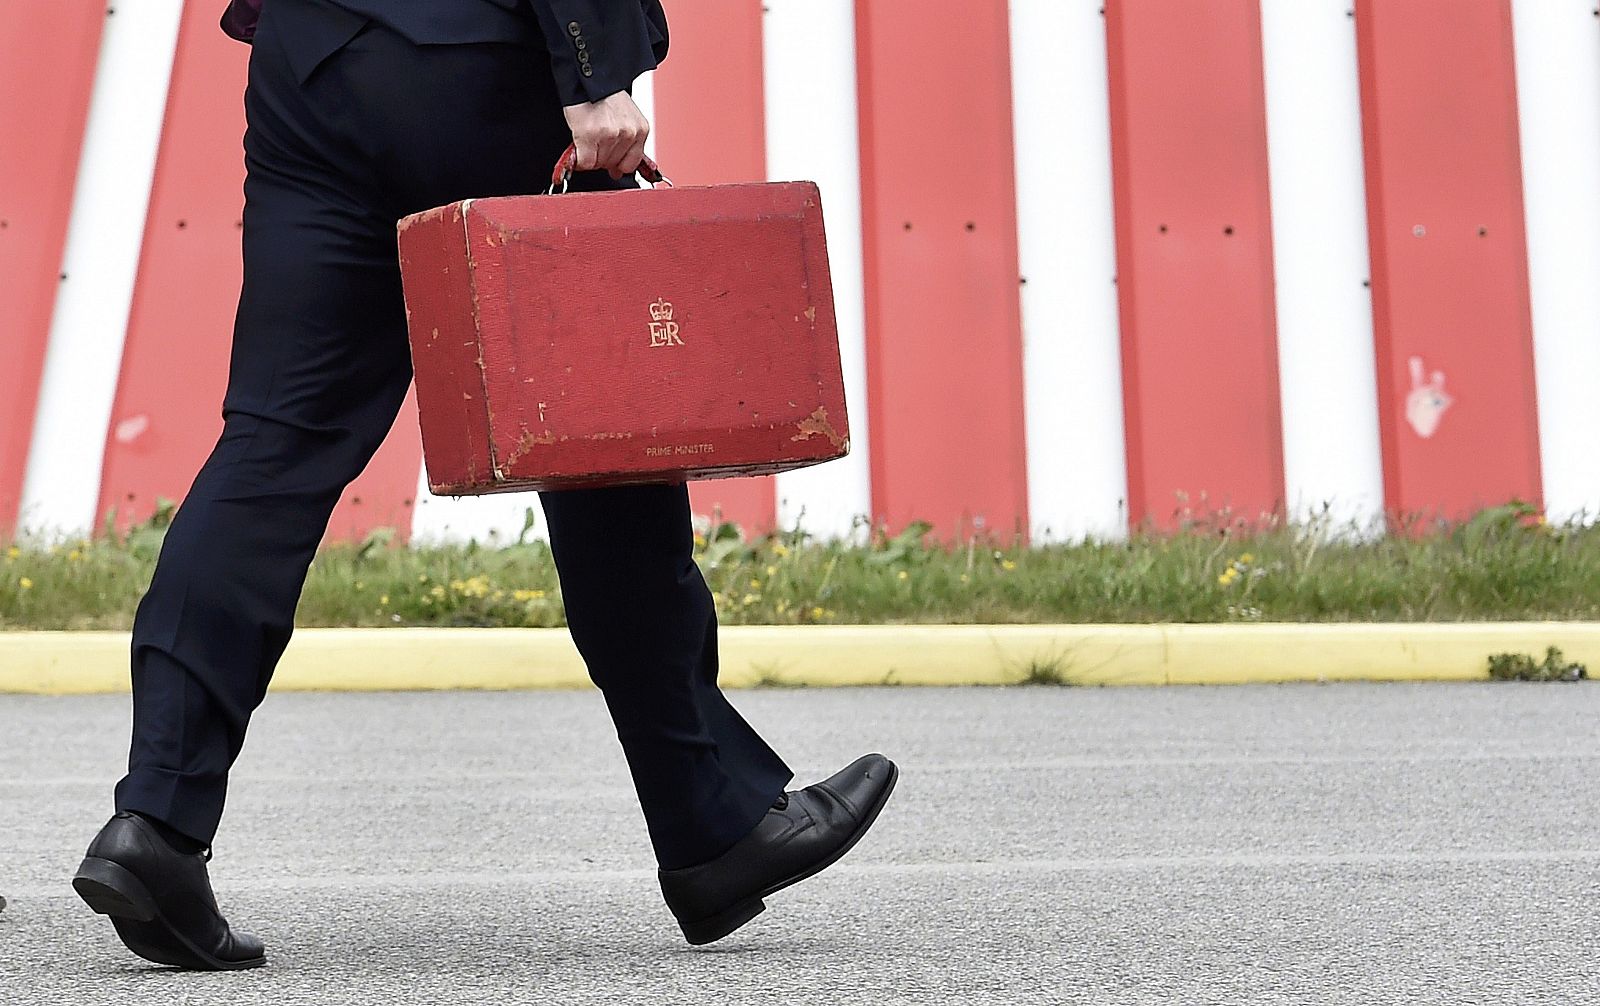 El primer ministro británico, David Cameron, camina con el maletín ministerial en el aeropuerto de Newquay, al suroeste de Inglaterra.